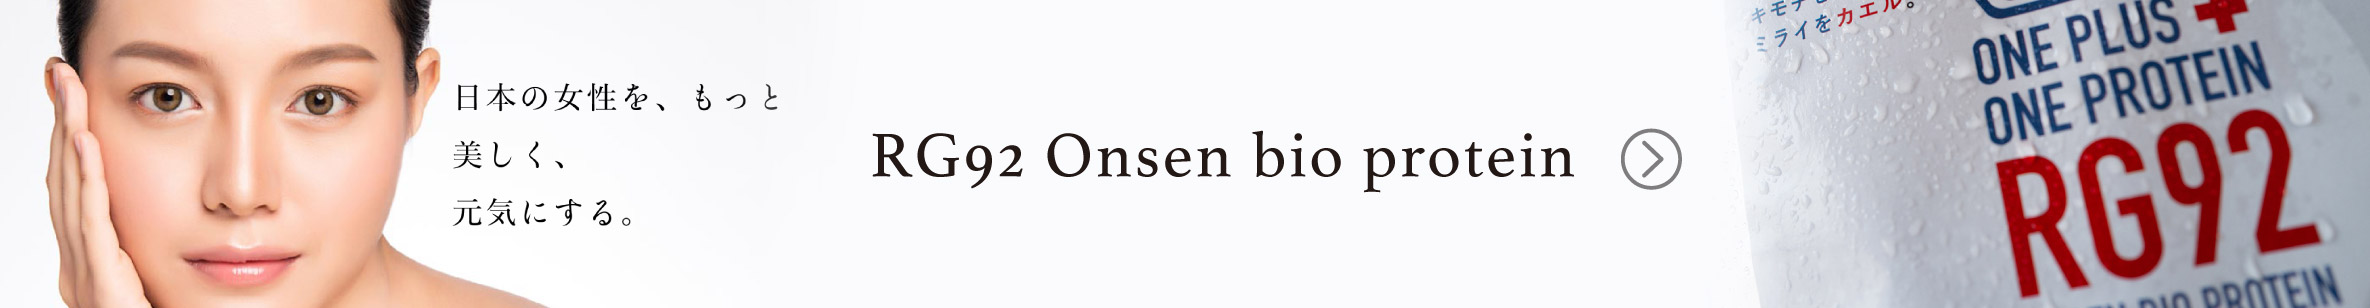 RG92 Onsen bio protein